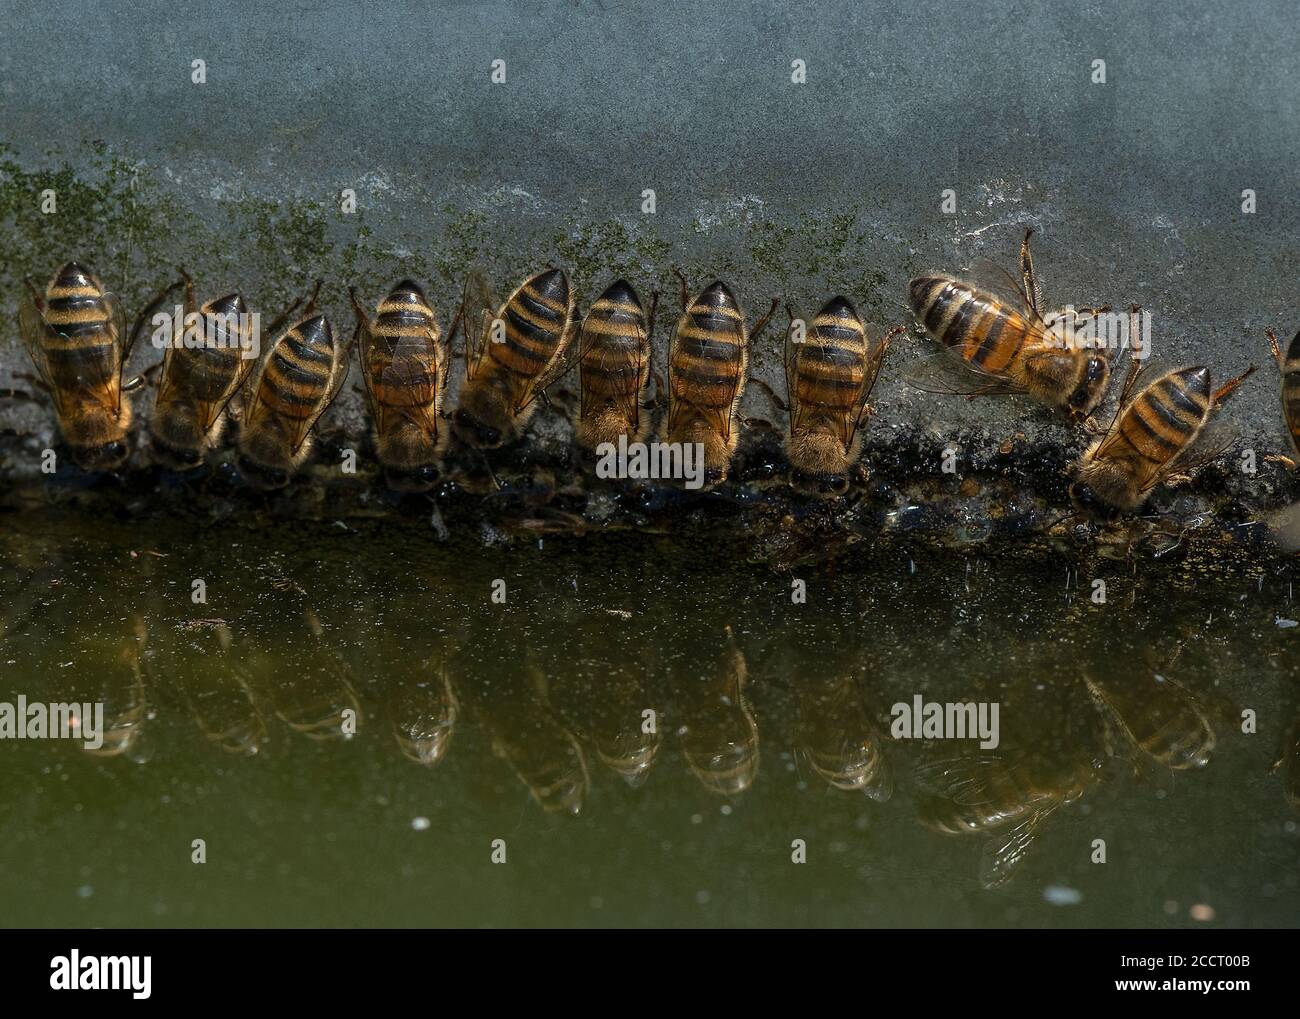 Les abeilles domestiques des travailleurs, APIs mellifera, buvant à la surface verticale au niveau de la cuvette d'eau. Hampshire. Banque D'Images